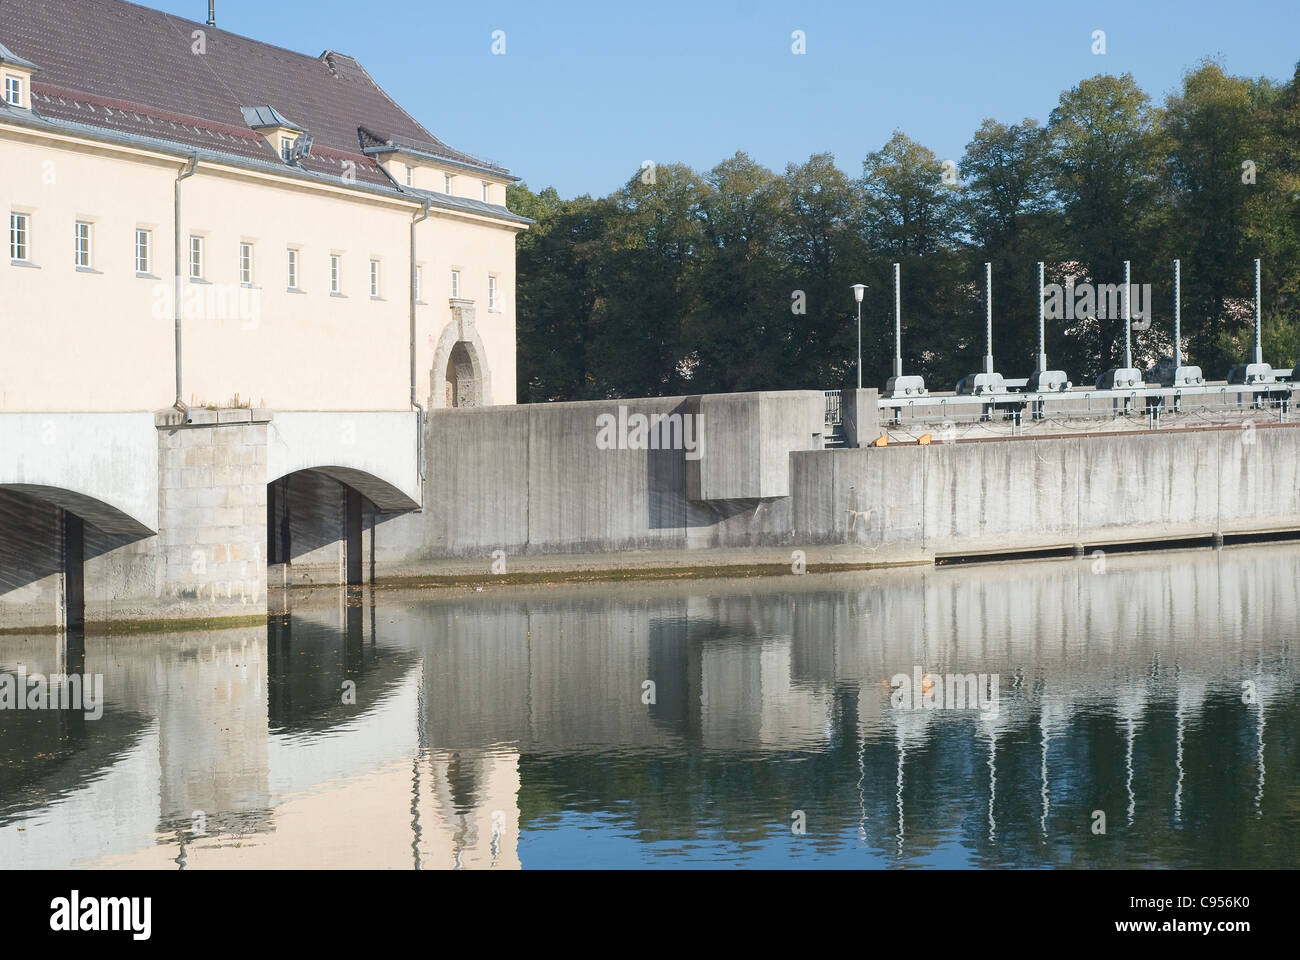 La production durable d'énergie hydroélectrique en Allemagne Banque D'Images